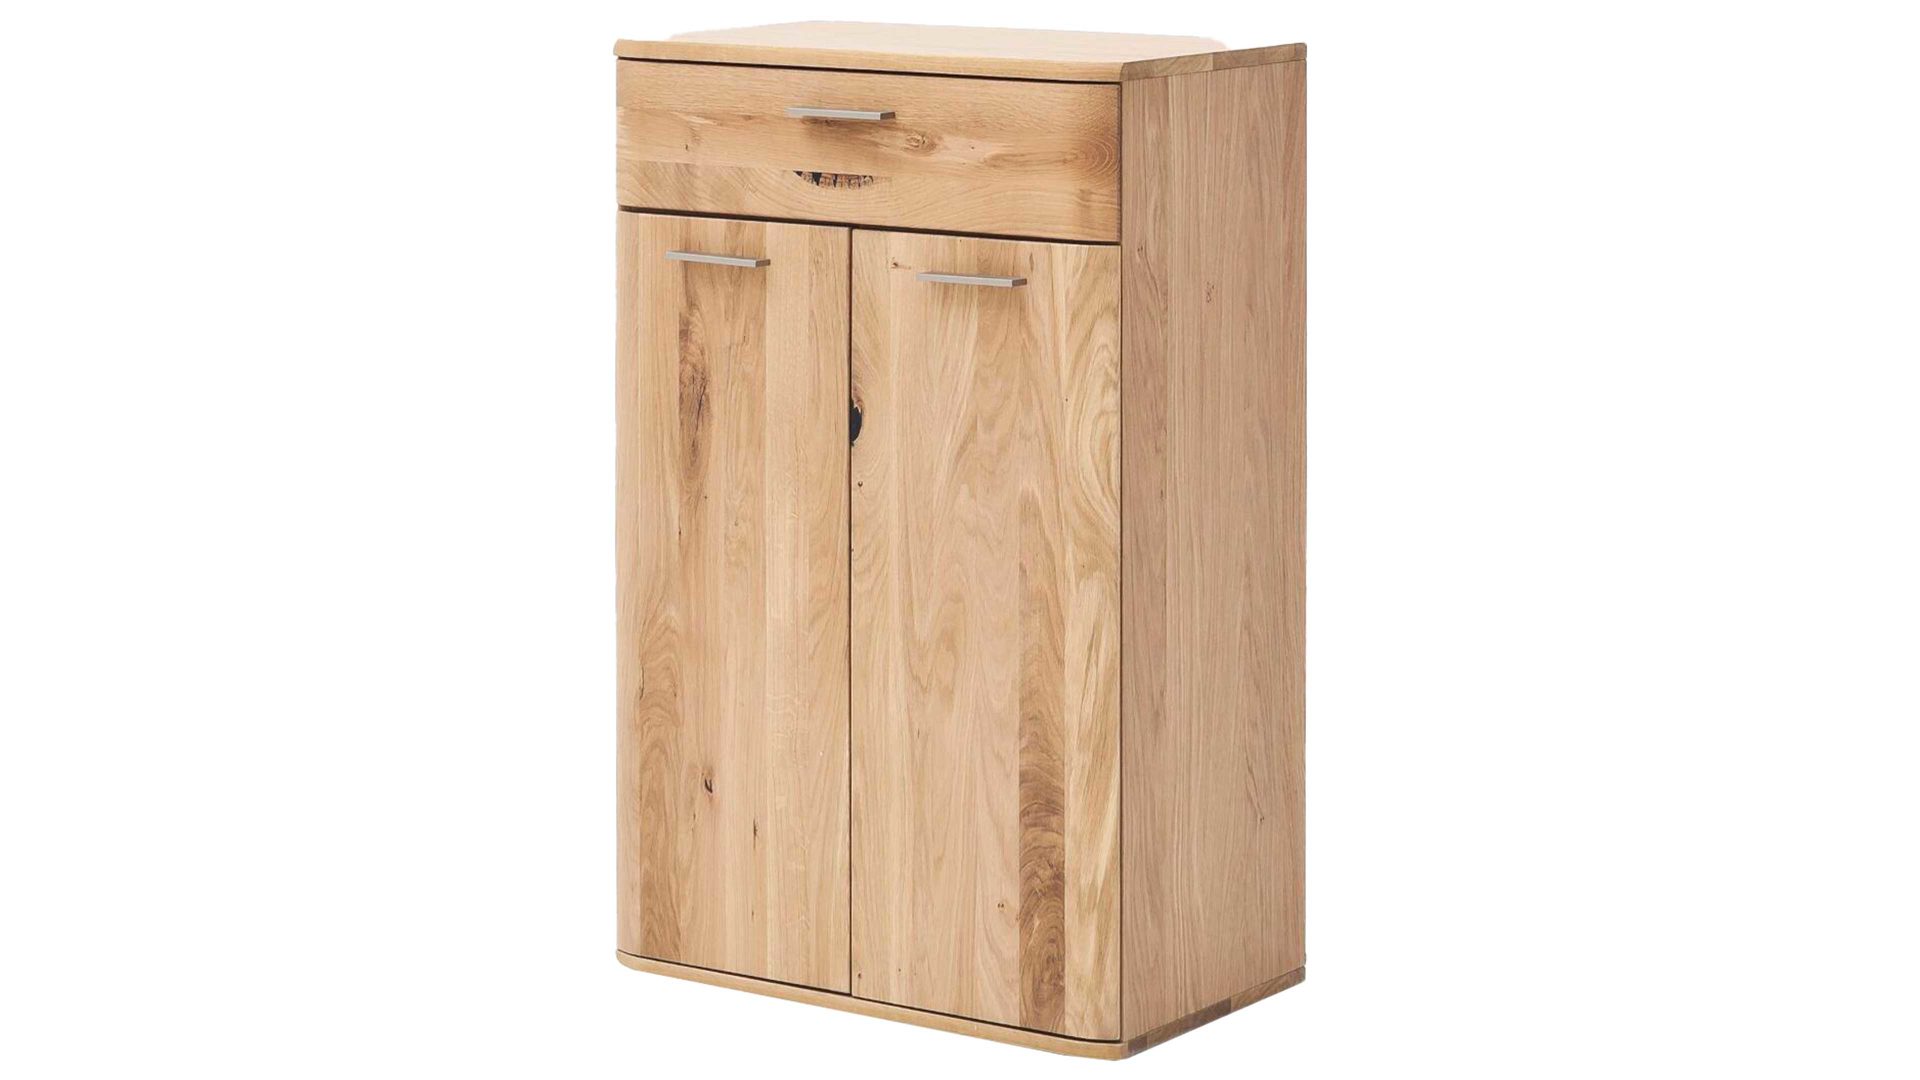 Kombikommode Mca furniture aus Holz in Holzfarben Kombikommode Nilo biancofarbene Balkeneiche – zwei Türen, eine Schublade